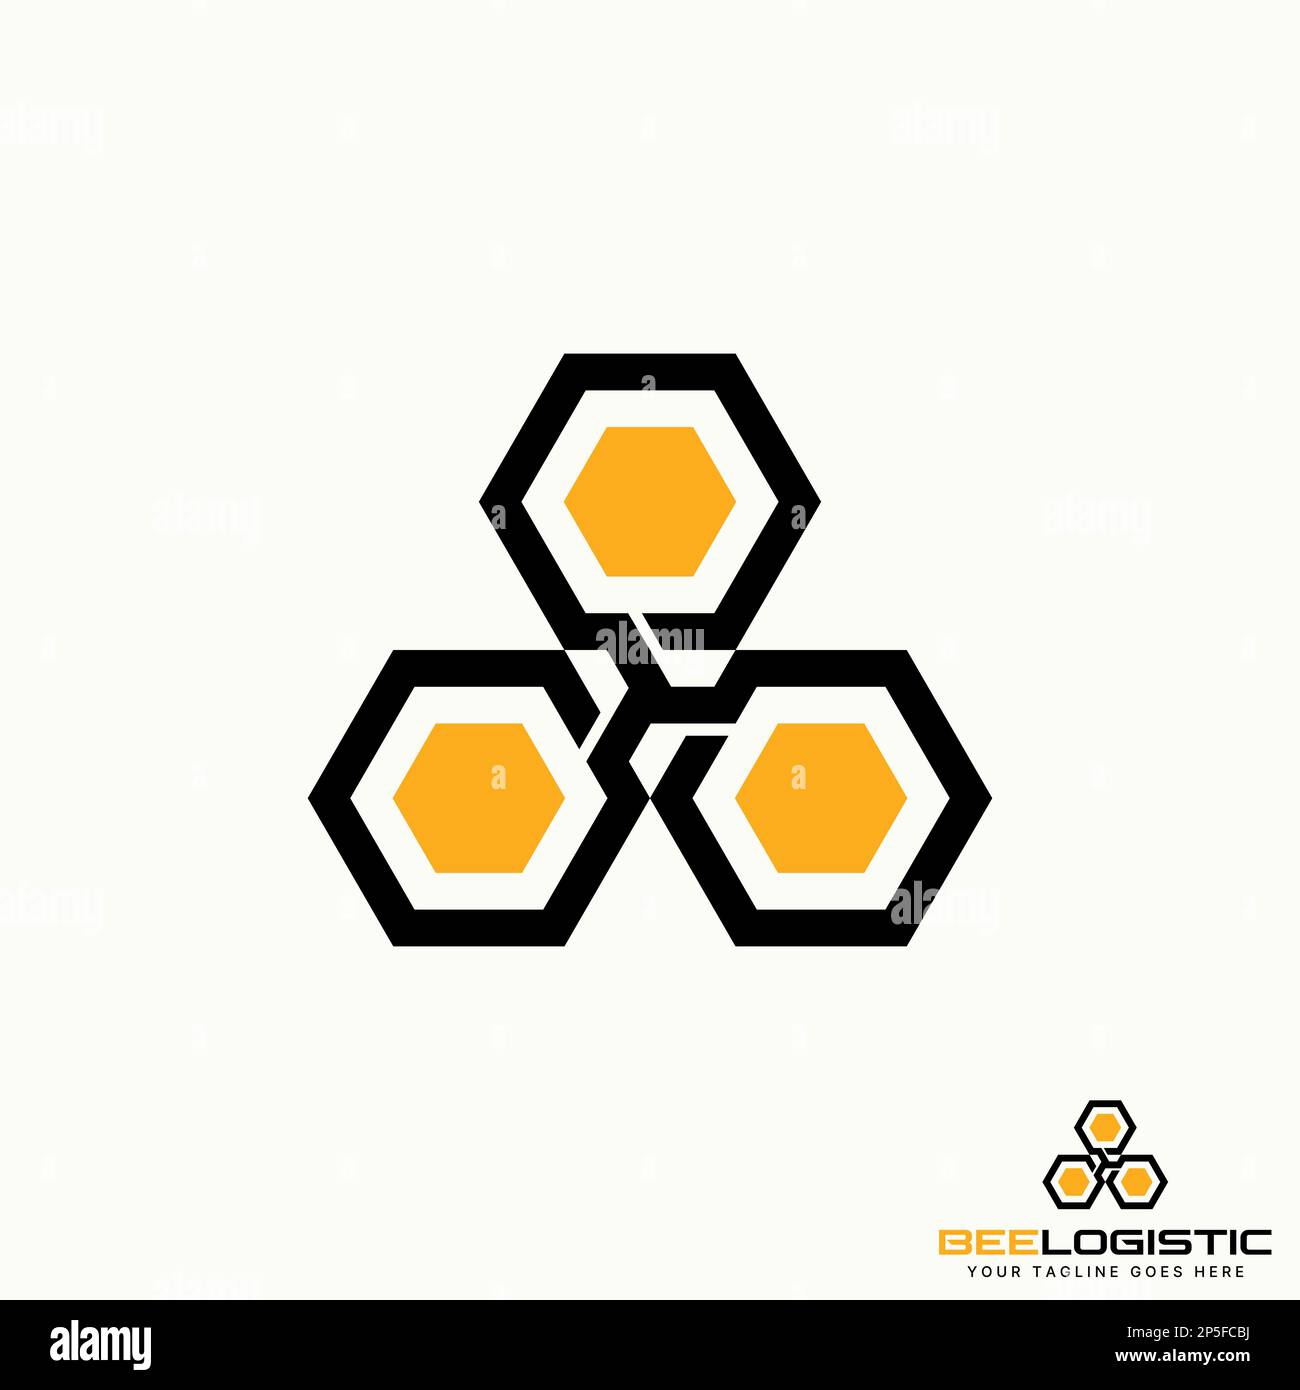 Logo design grafico concetto creativo astratto premium libero vettore stock unico lineout legato 3 esagoni come casa d'ape. Relativo all'animale o alla precisione Illustrazione Vettoriale